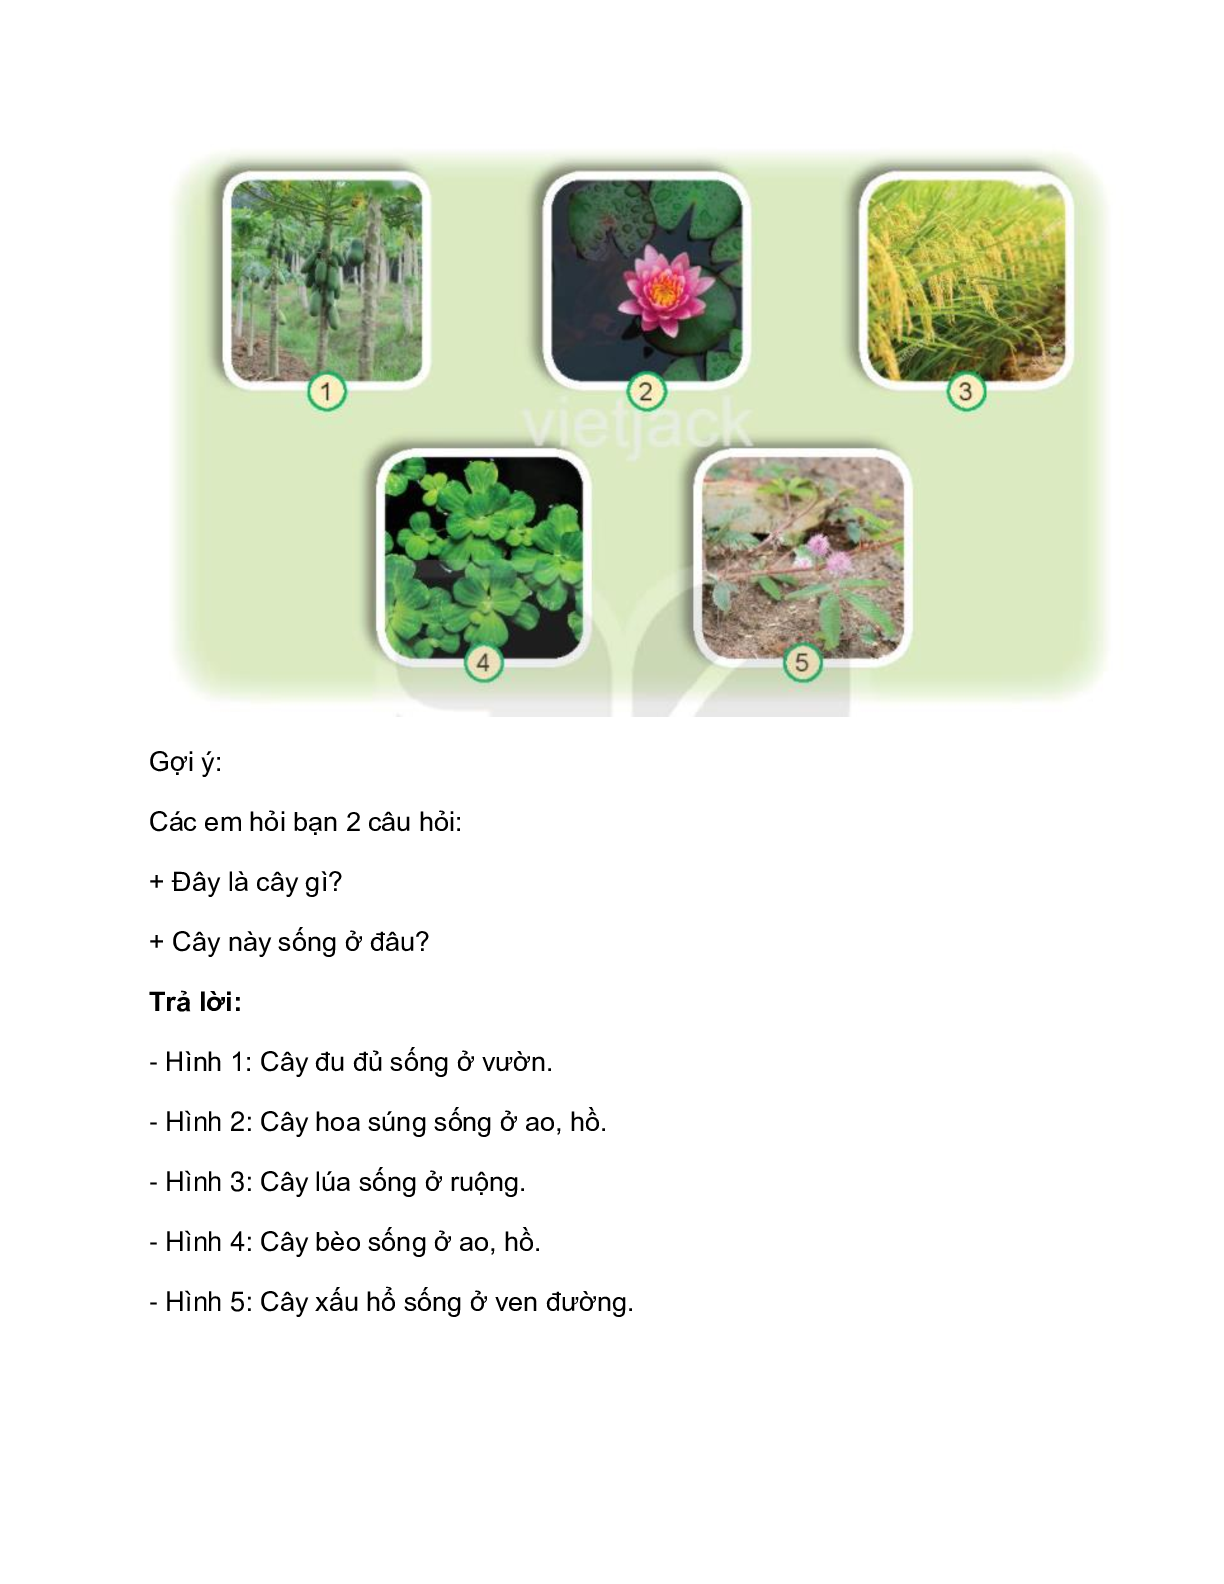 Giải SGK Tự nhiên và Xã hội lớp 2 trang 58, 59, 60, 61 Bài 16: Thực vật sống ở đâu – Kết nối tri thức (trang 5)